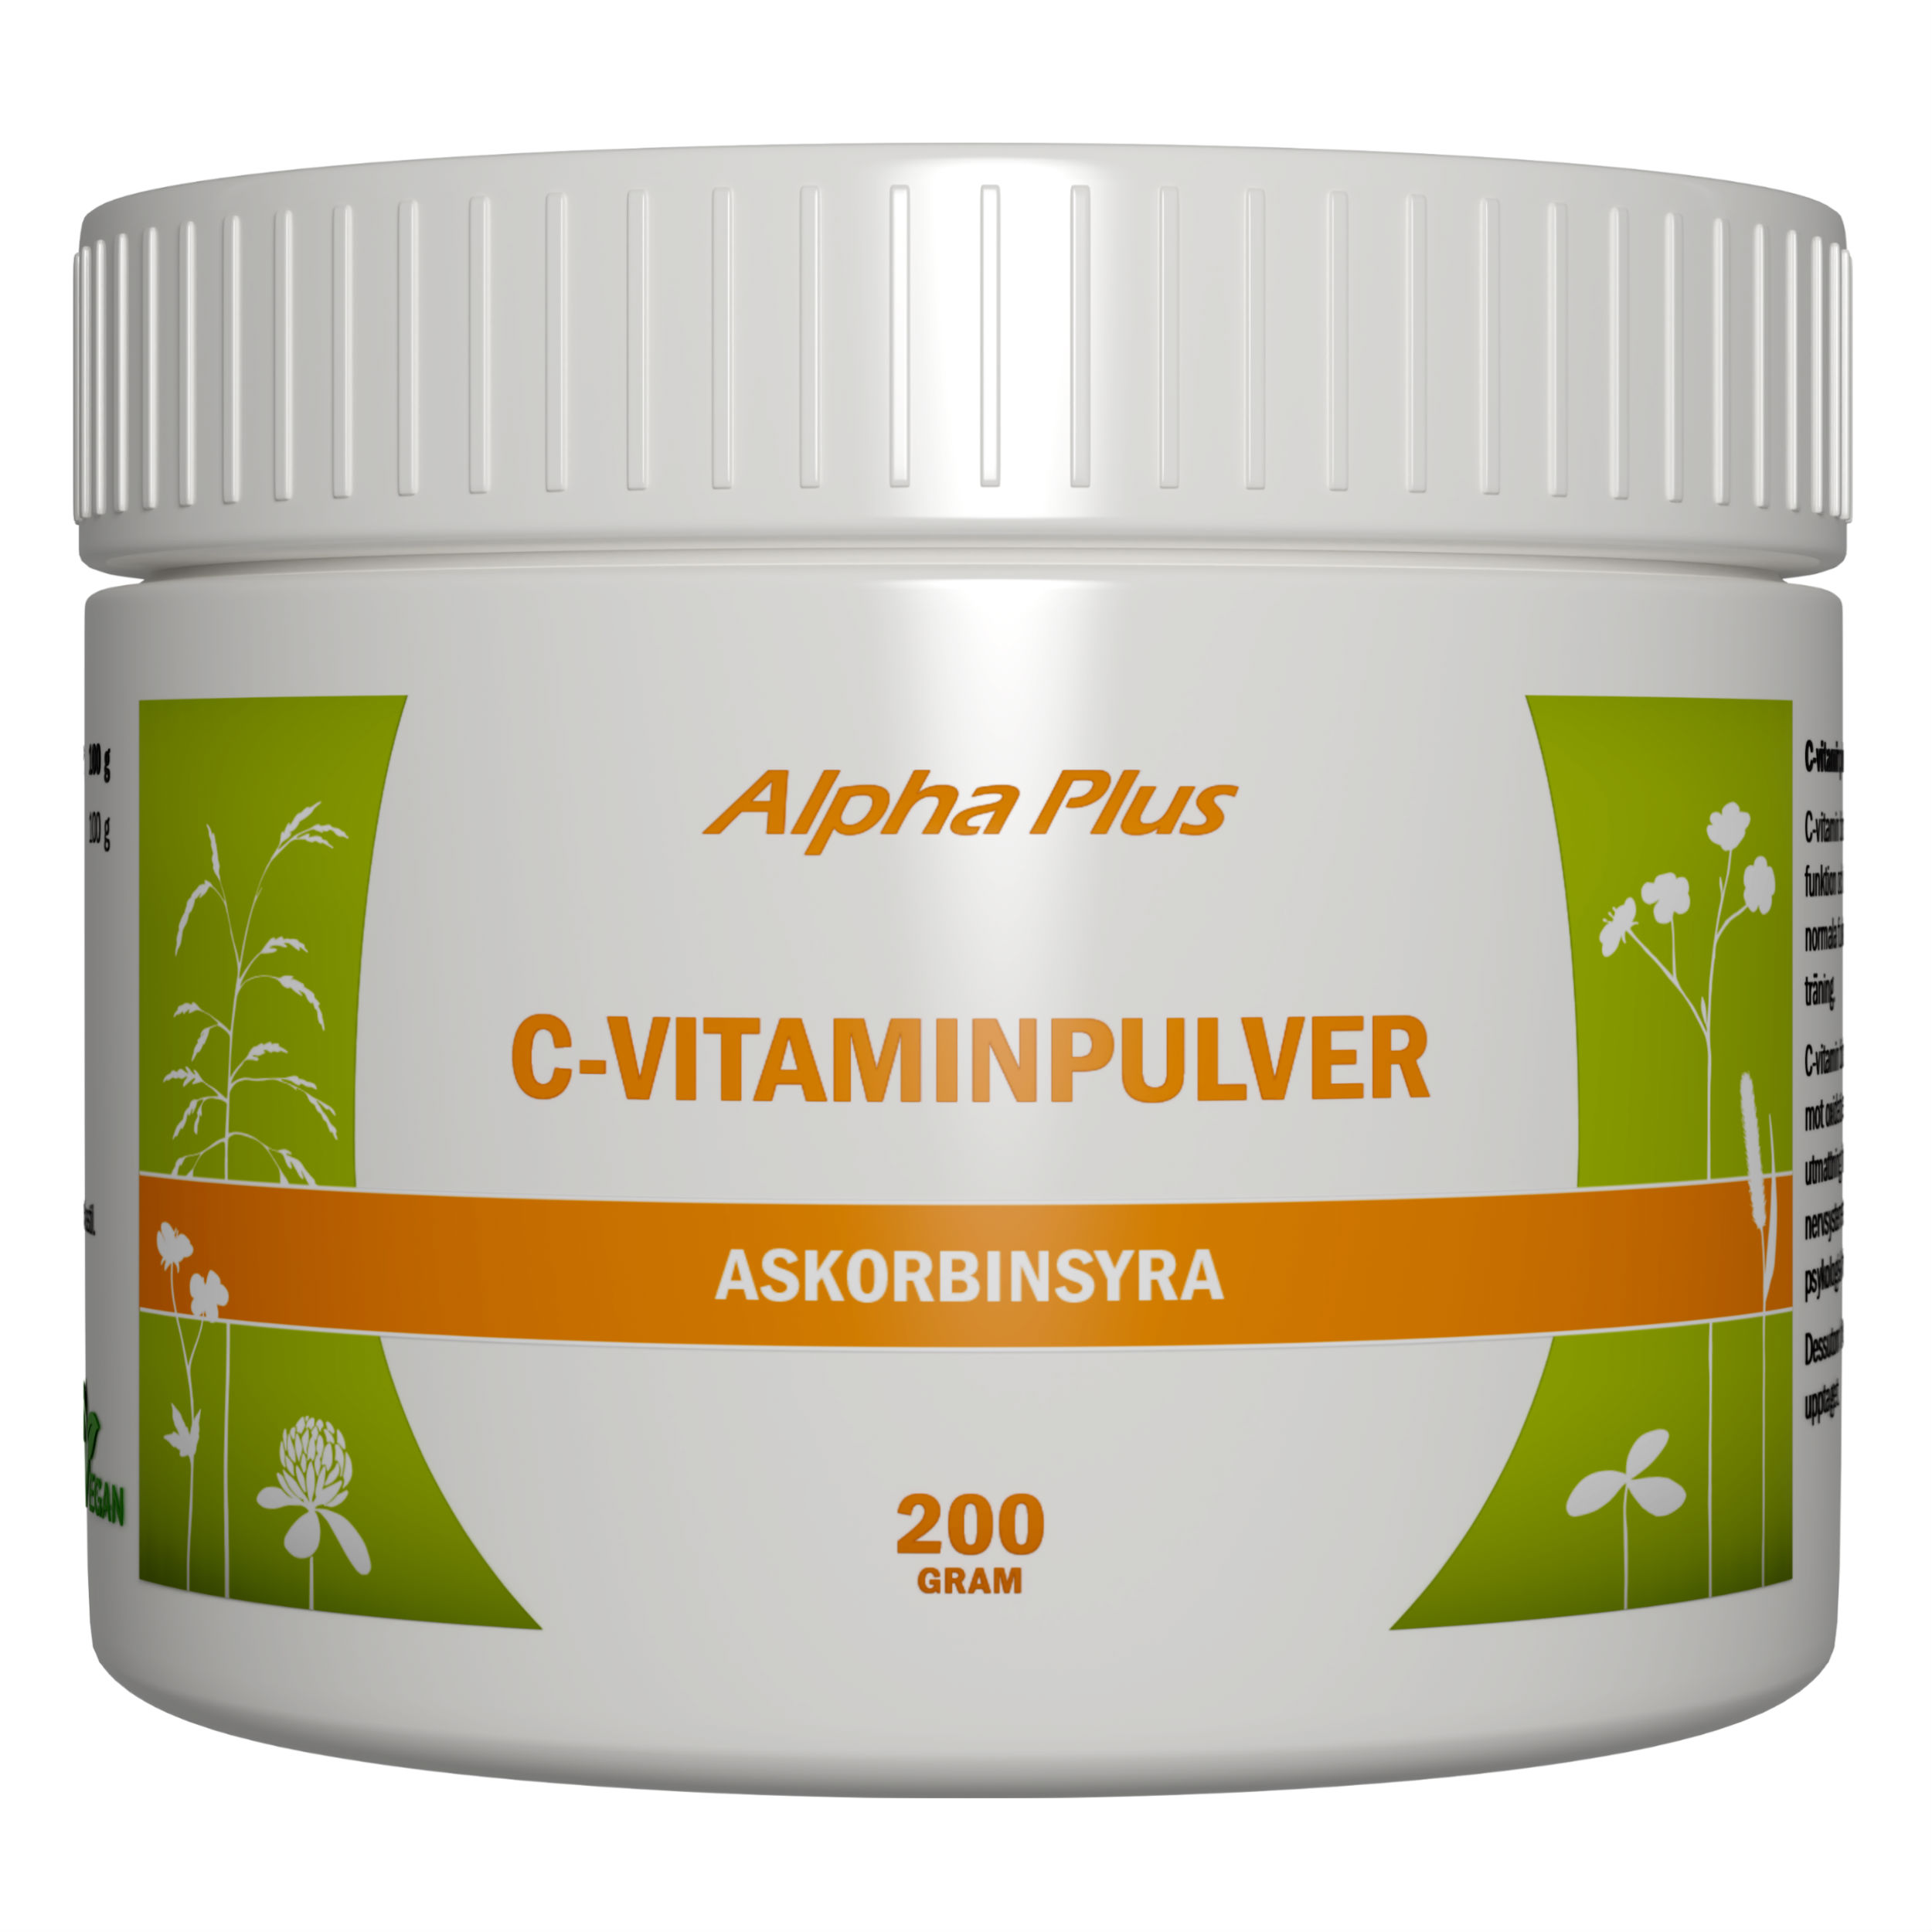 Alpha Plus C-vitaminpulver 200 g